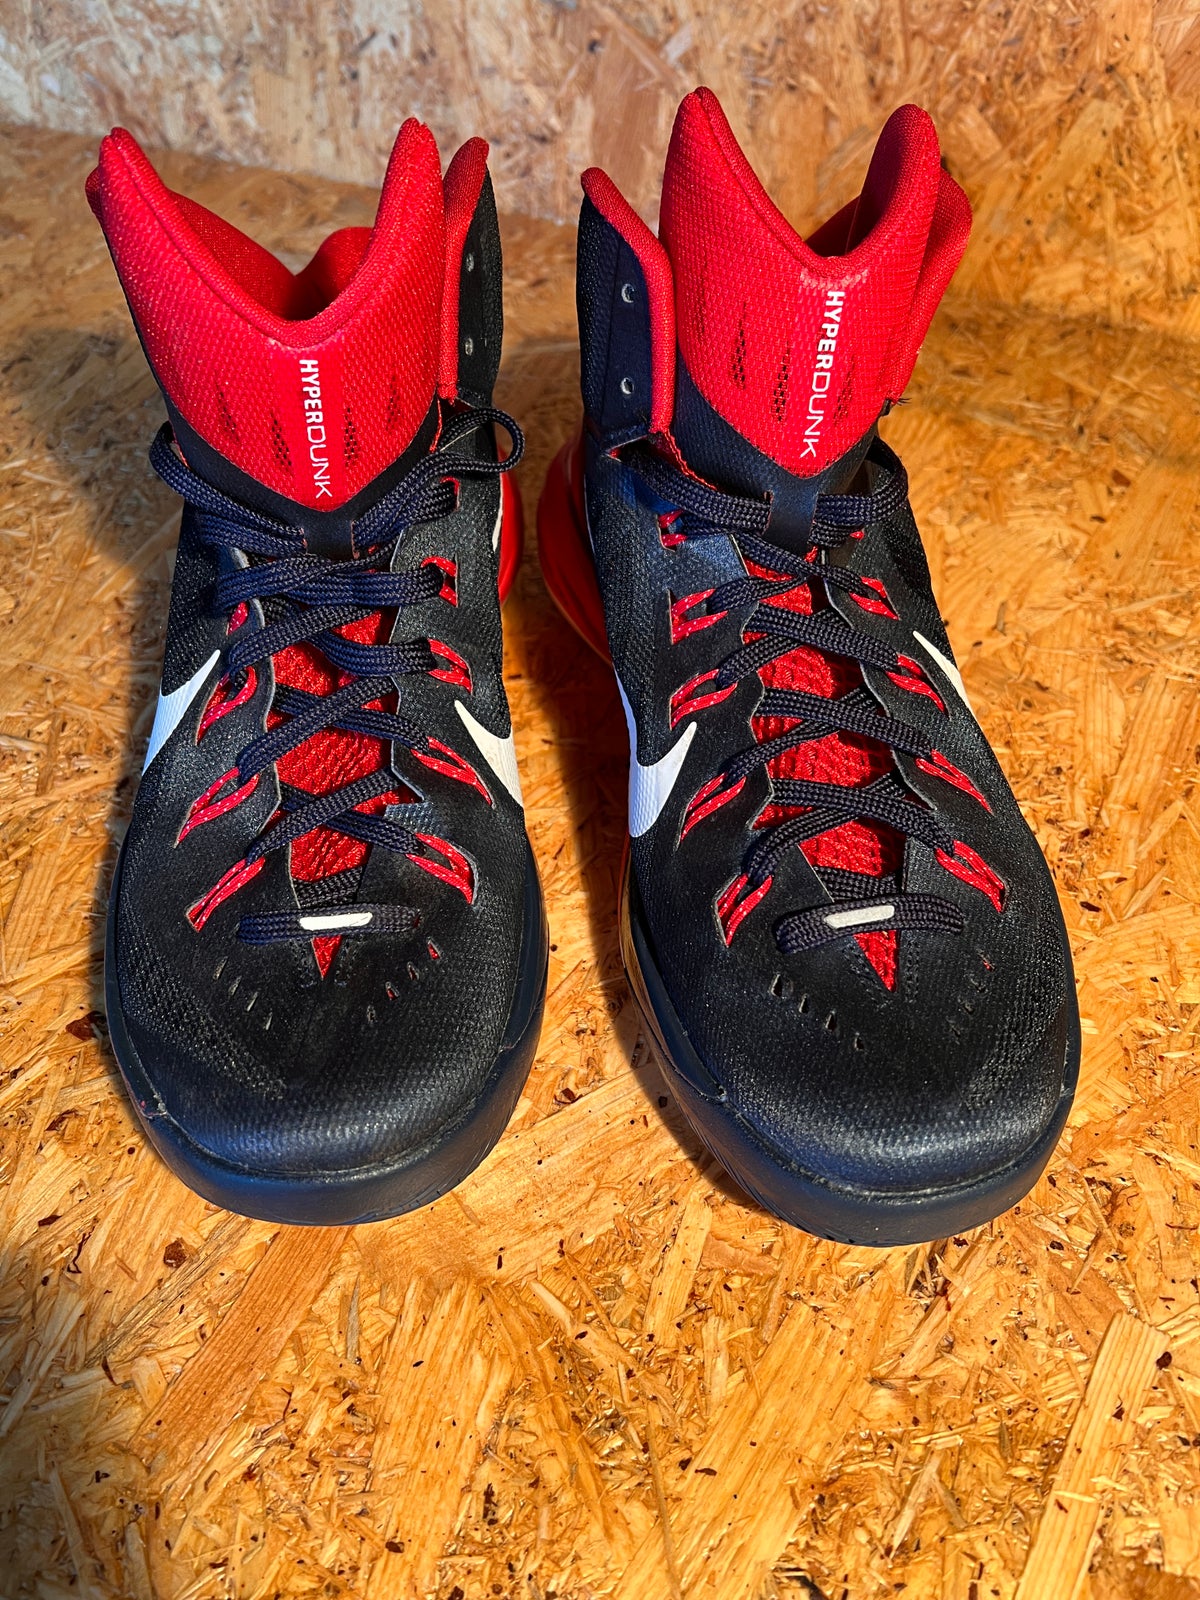 Støvler, Nike Hyperdunk 2014 ' Obsidian red' basket